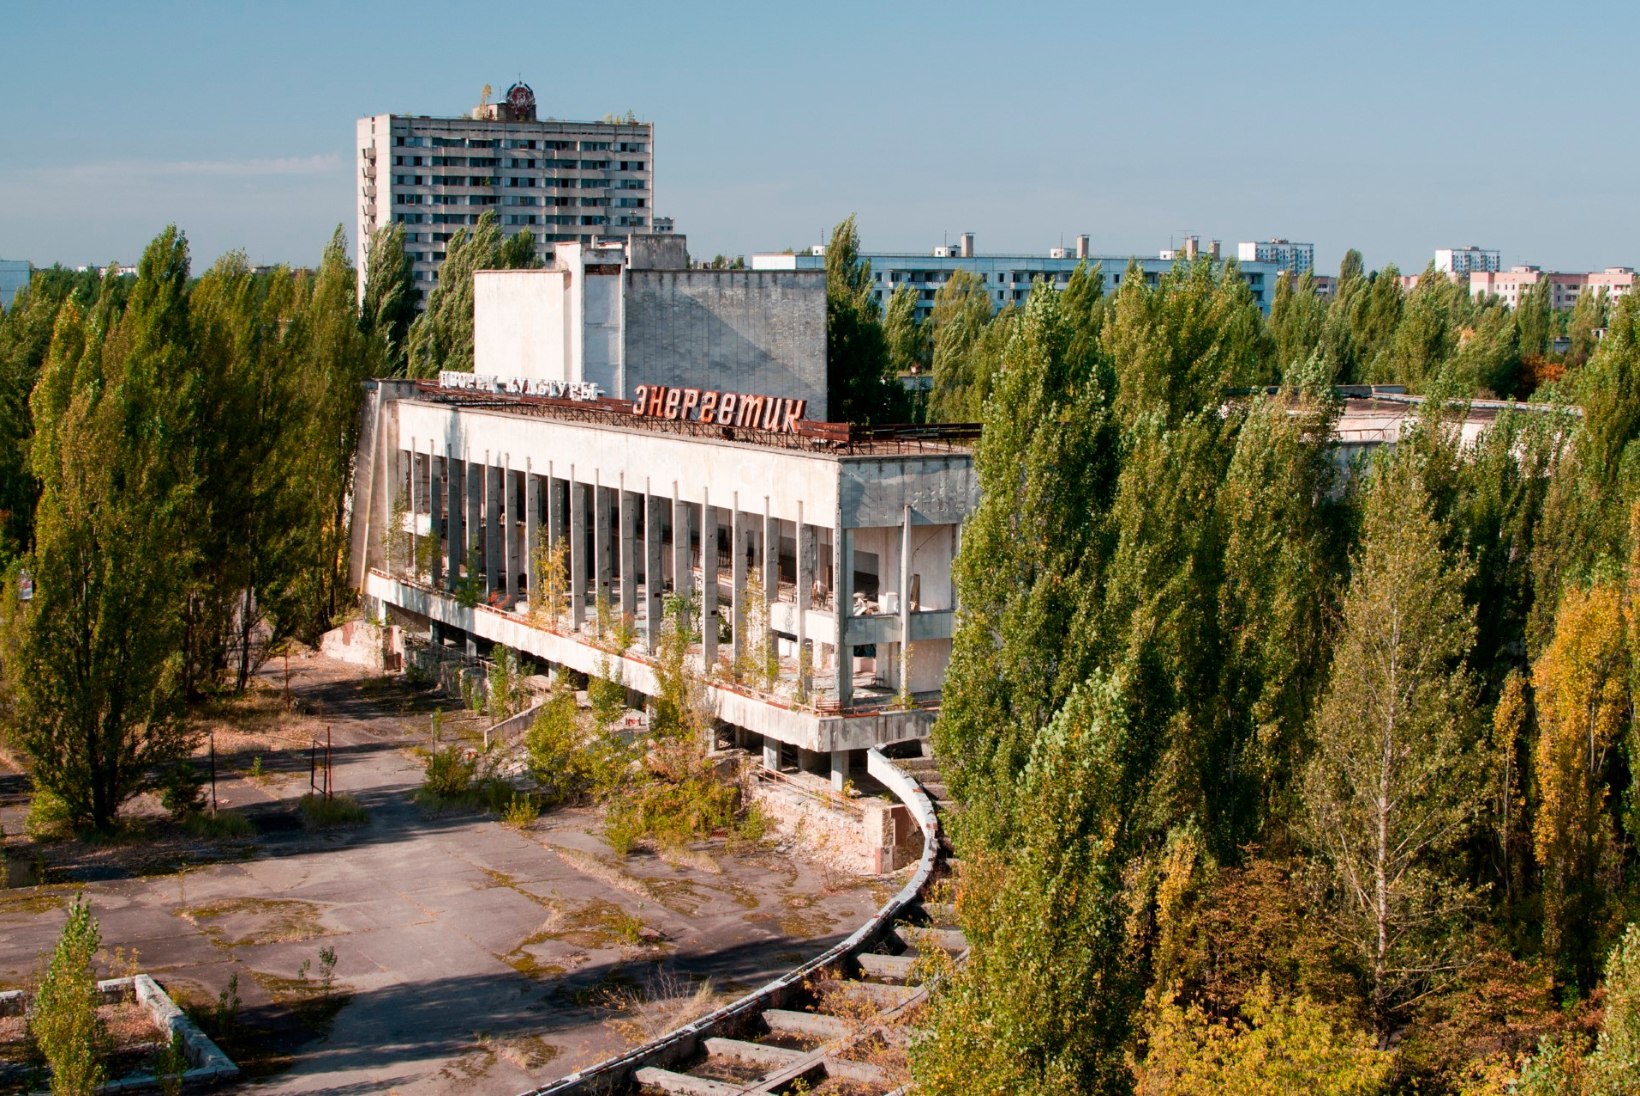 Valitsus tahab Tšernobõli ohvrite toetust edaspidi maksta ka Eestis kodakondsuseta elavatele inimestele